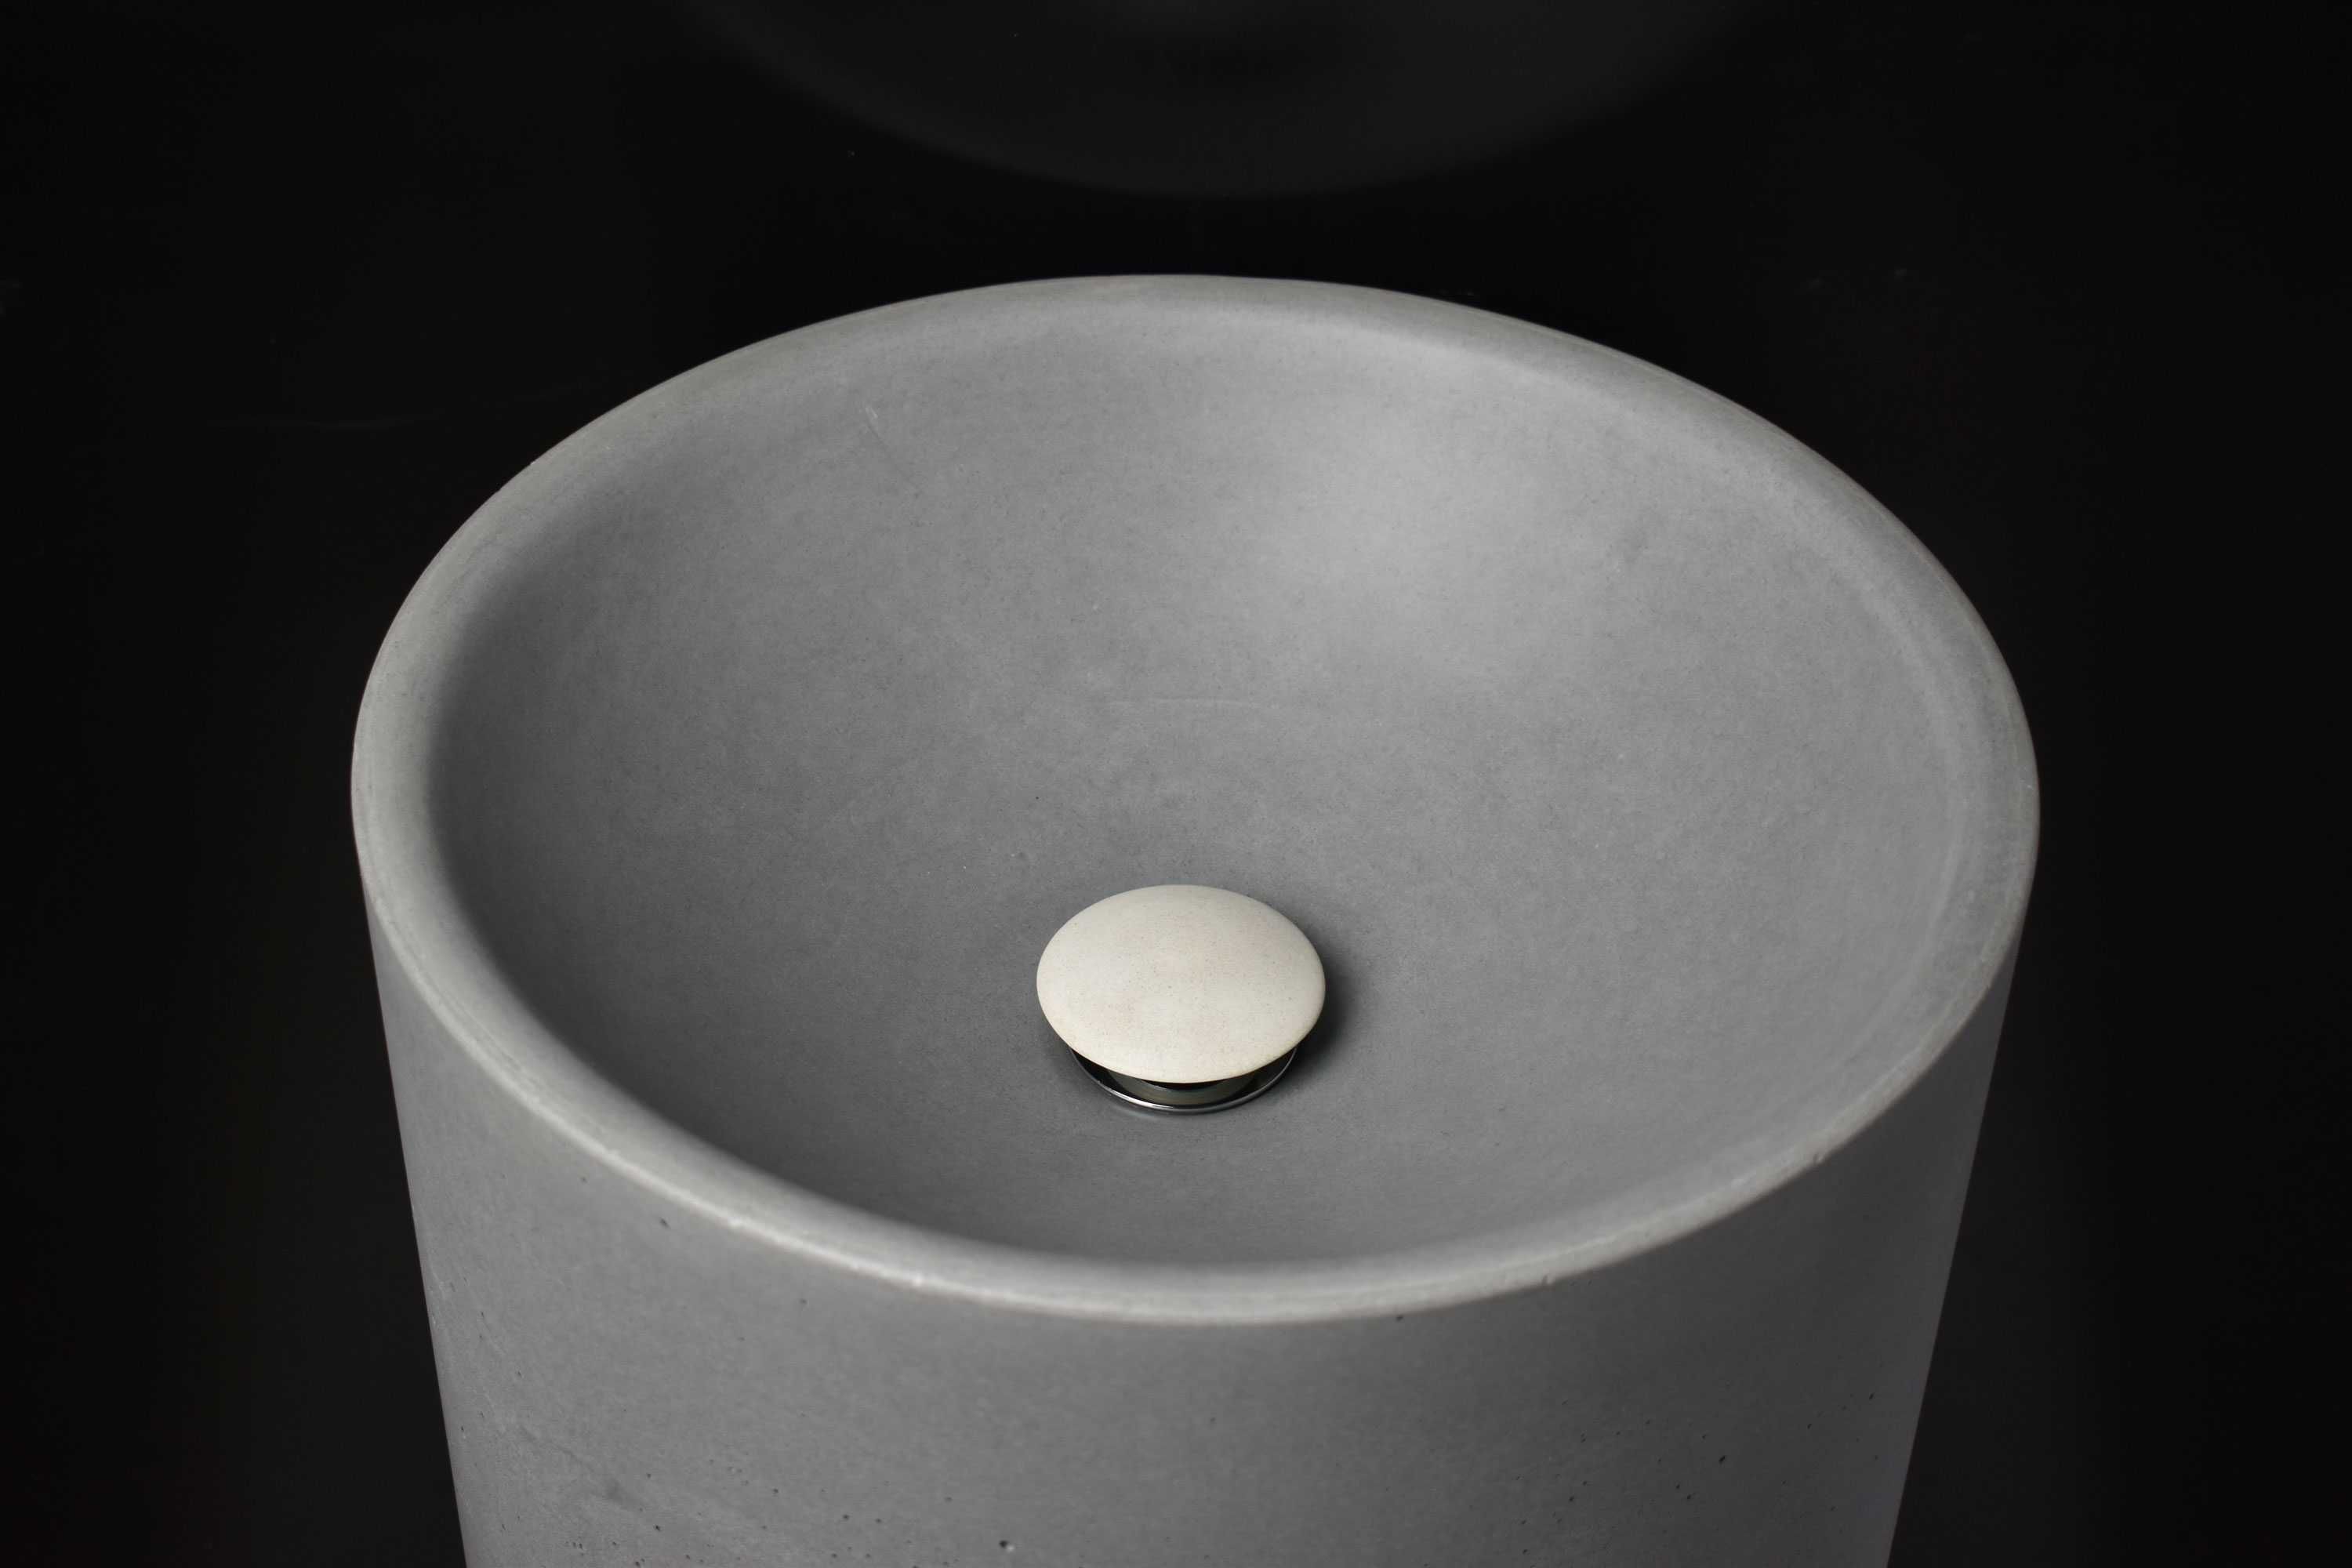 Раковина з бетону "Priscilla" мийка мойка умивальник бетон дизайн